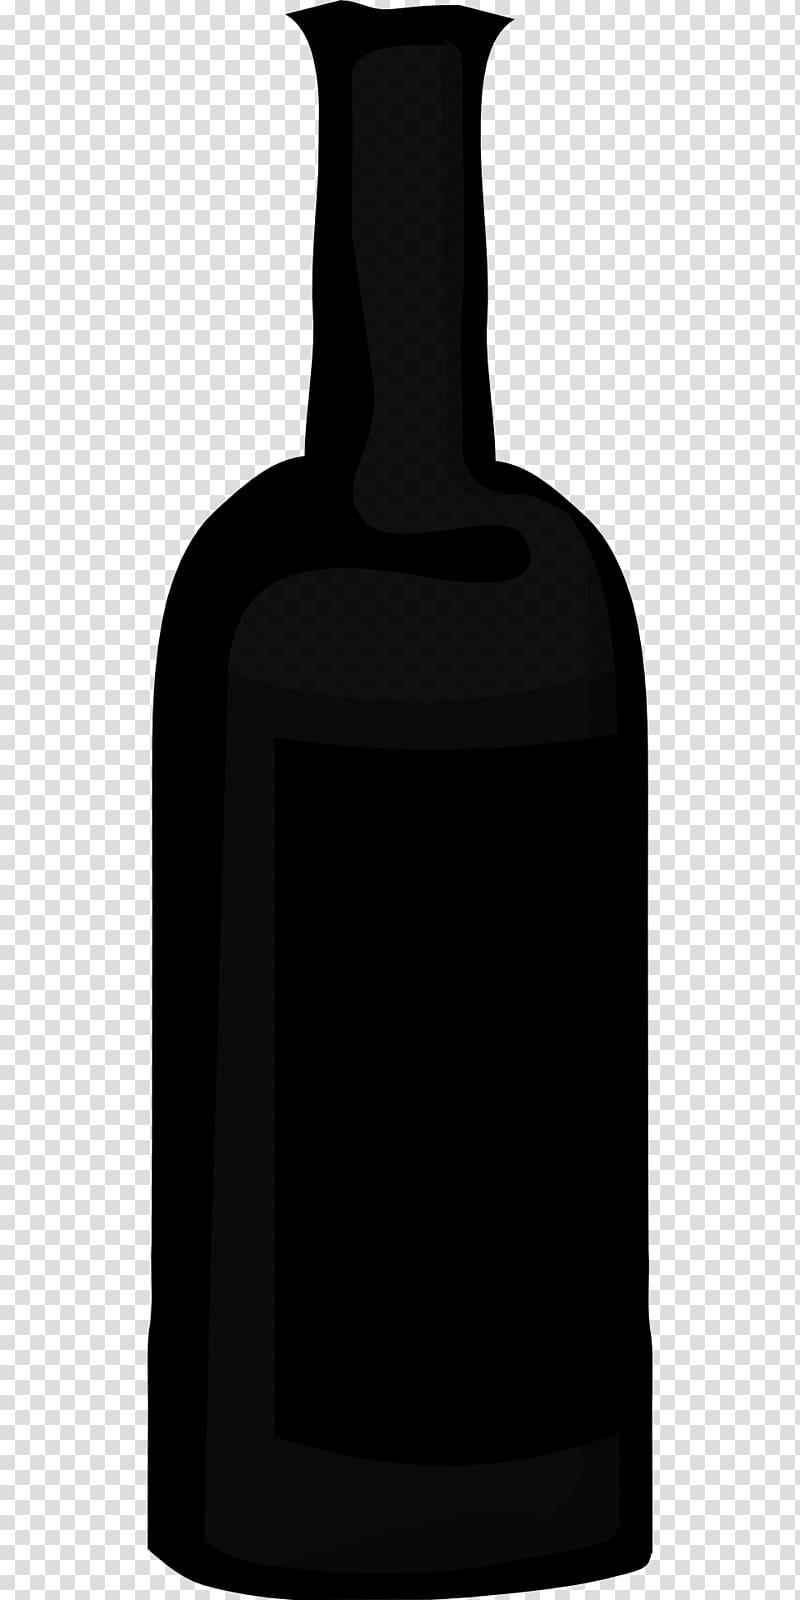 Wine Bottle Beer Alcoholic drink, bottle transparent background PNG clipart